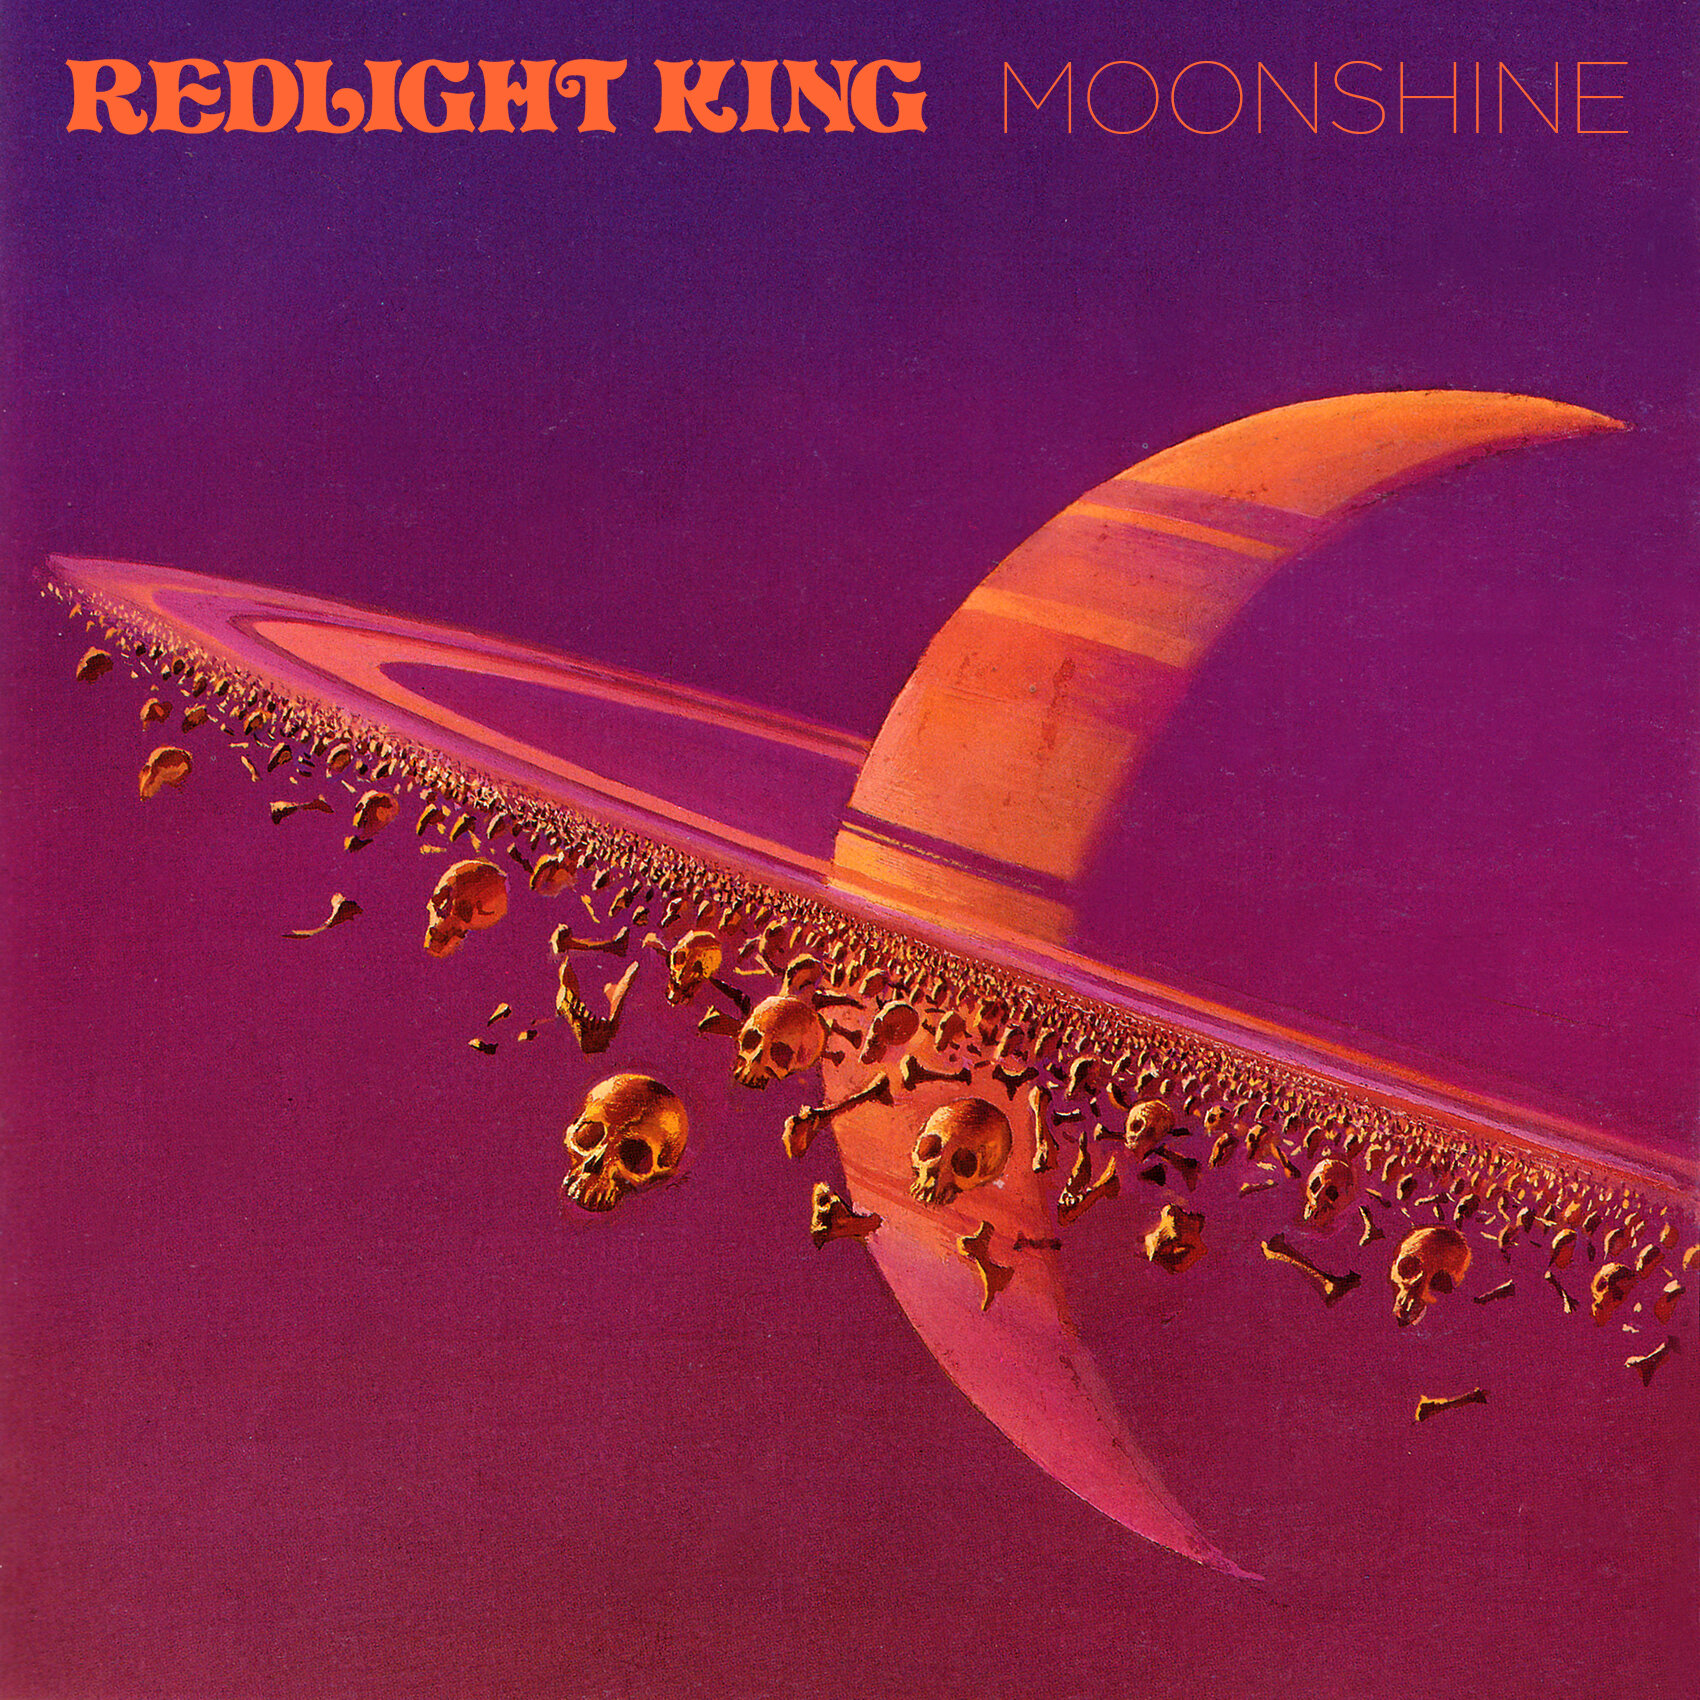 REDLIGHT KING ALBUM 'MOONSHINE' IS HERE